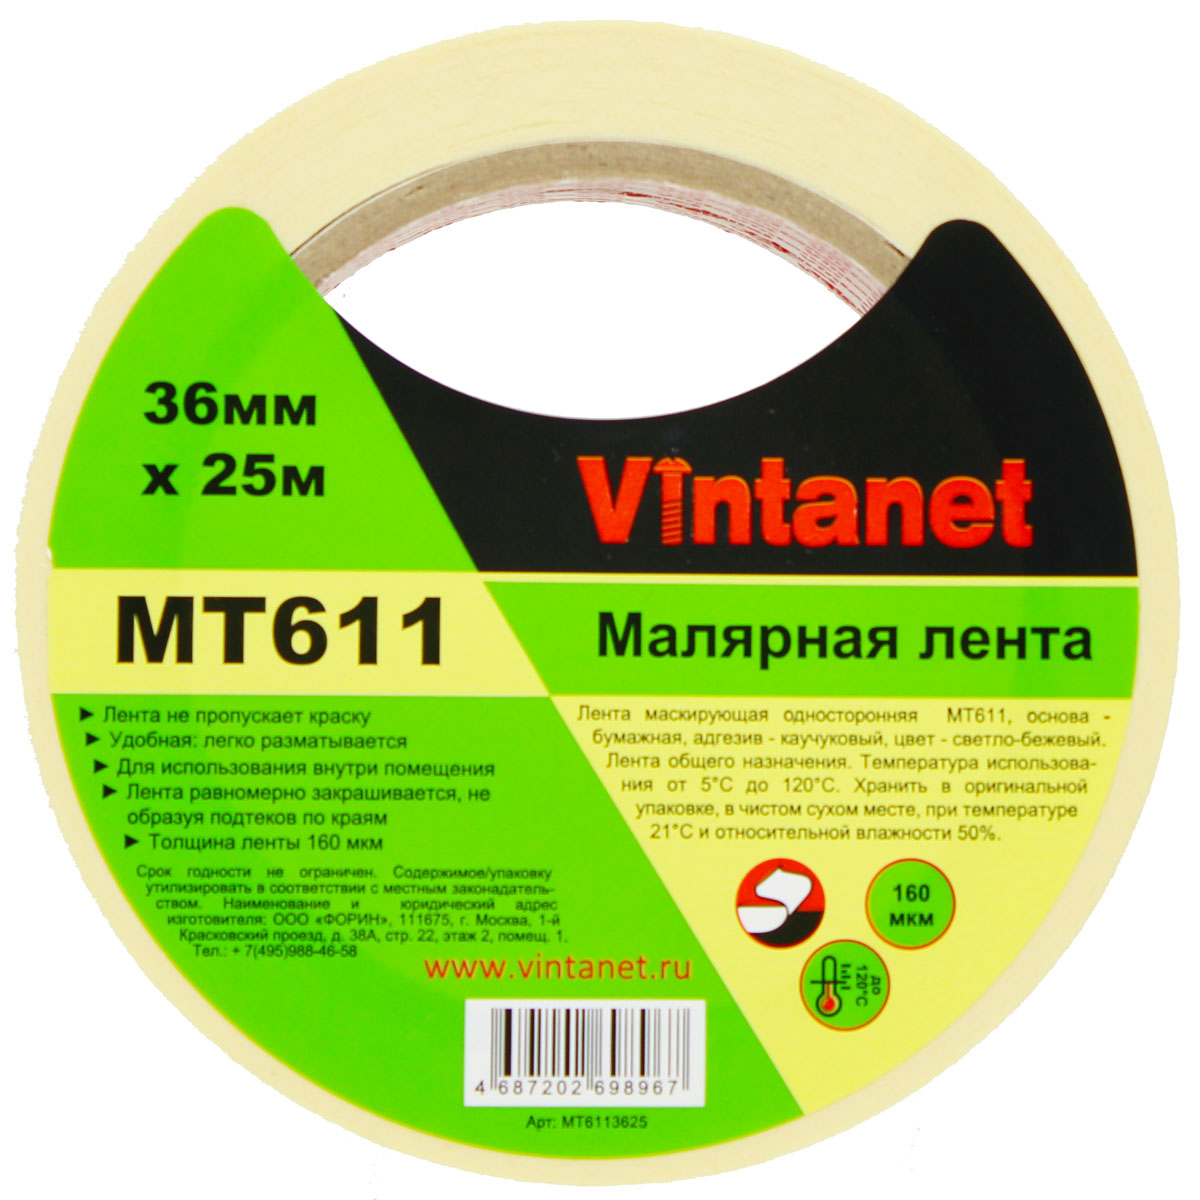 Лента малярная высокотемпературная Vintanet MT611, 120 С, 160 мкм, 36мм х 25м, MT6113625 бумажная малярная лента klebebander